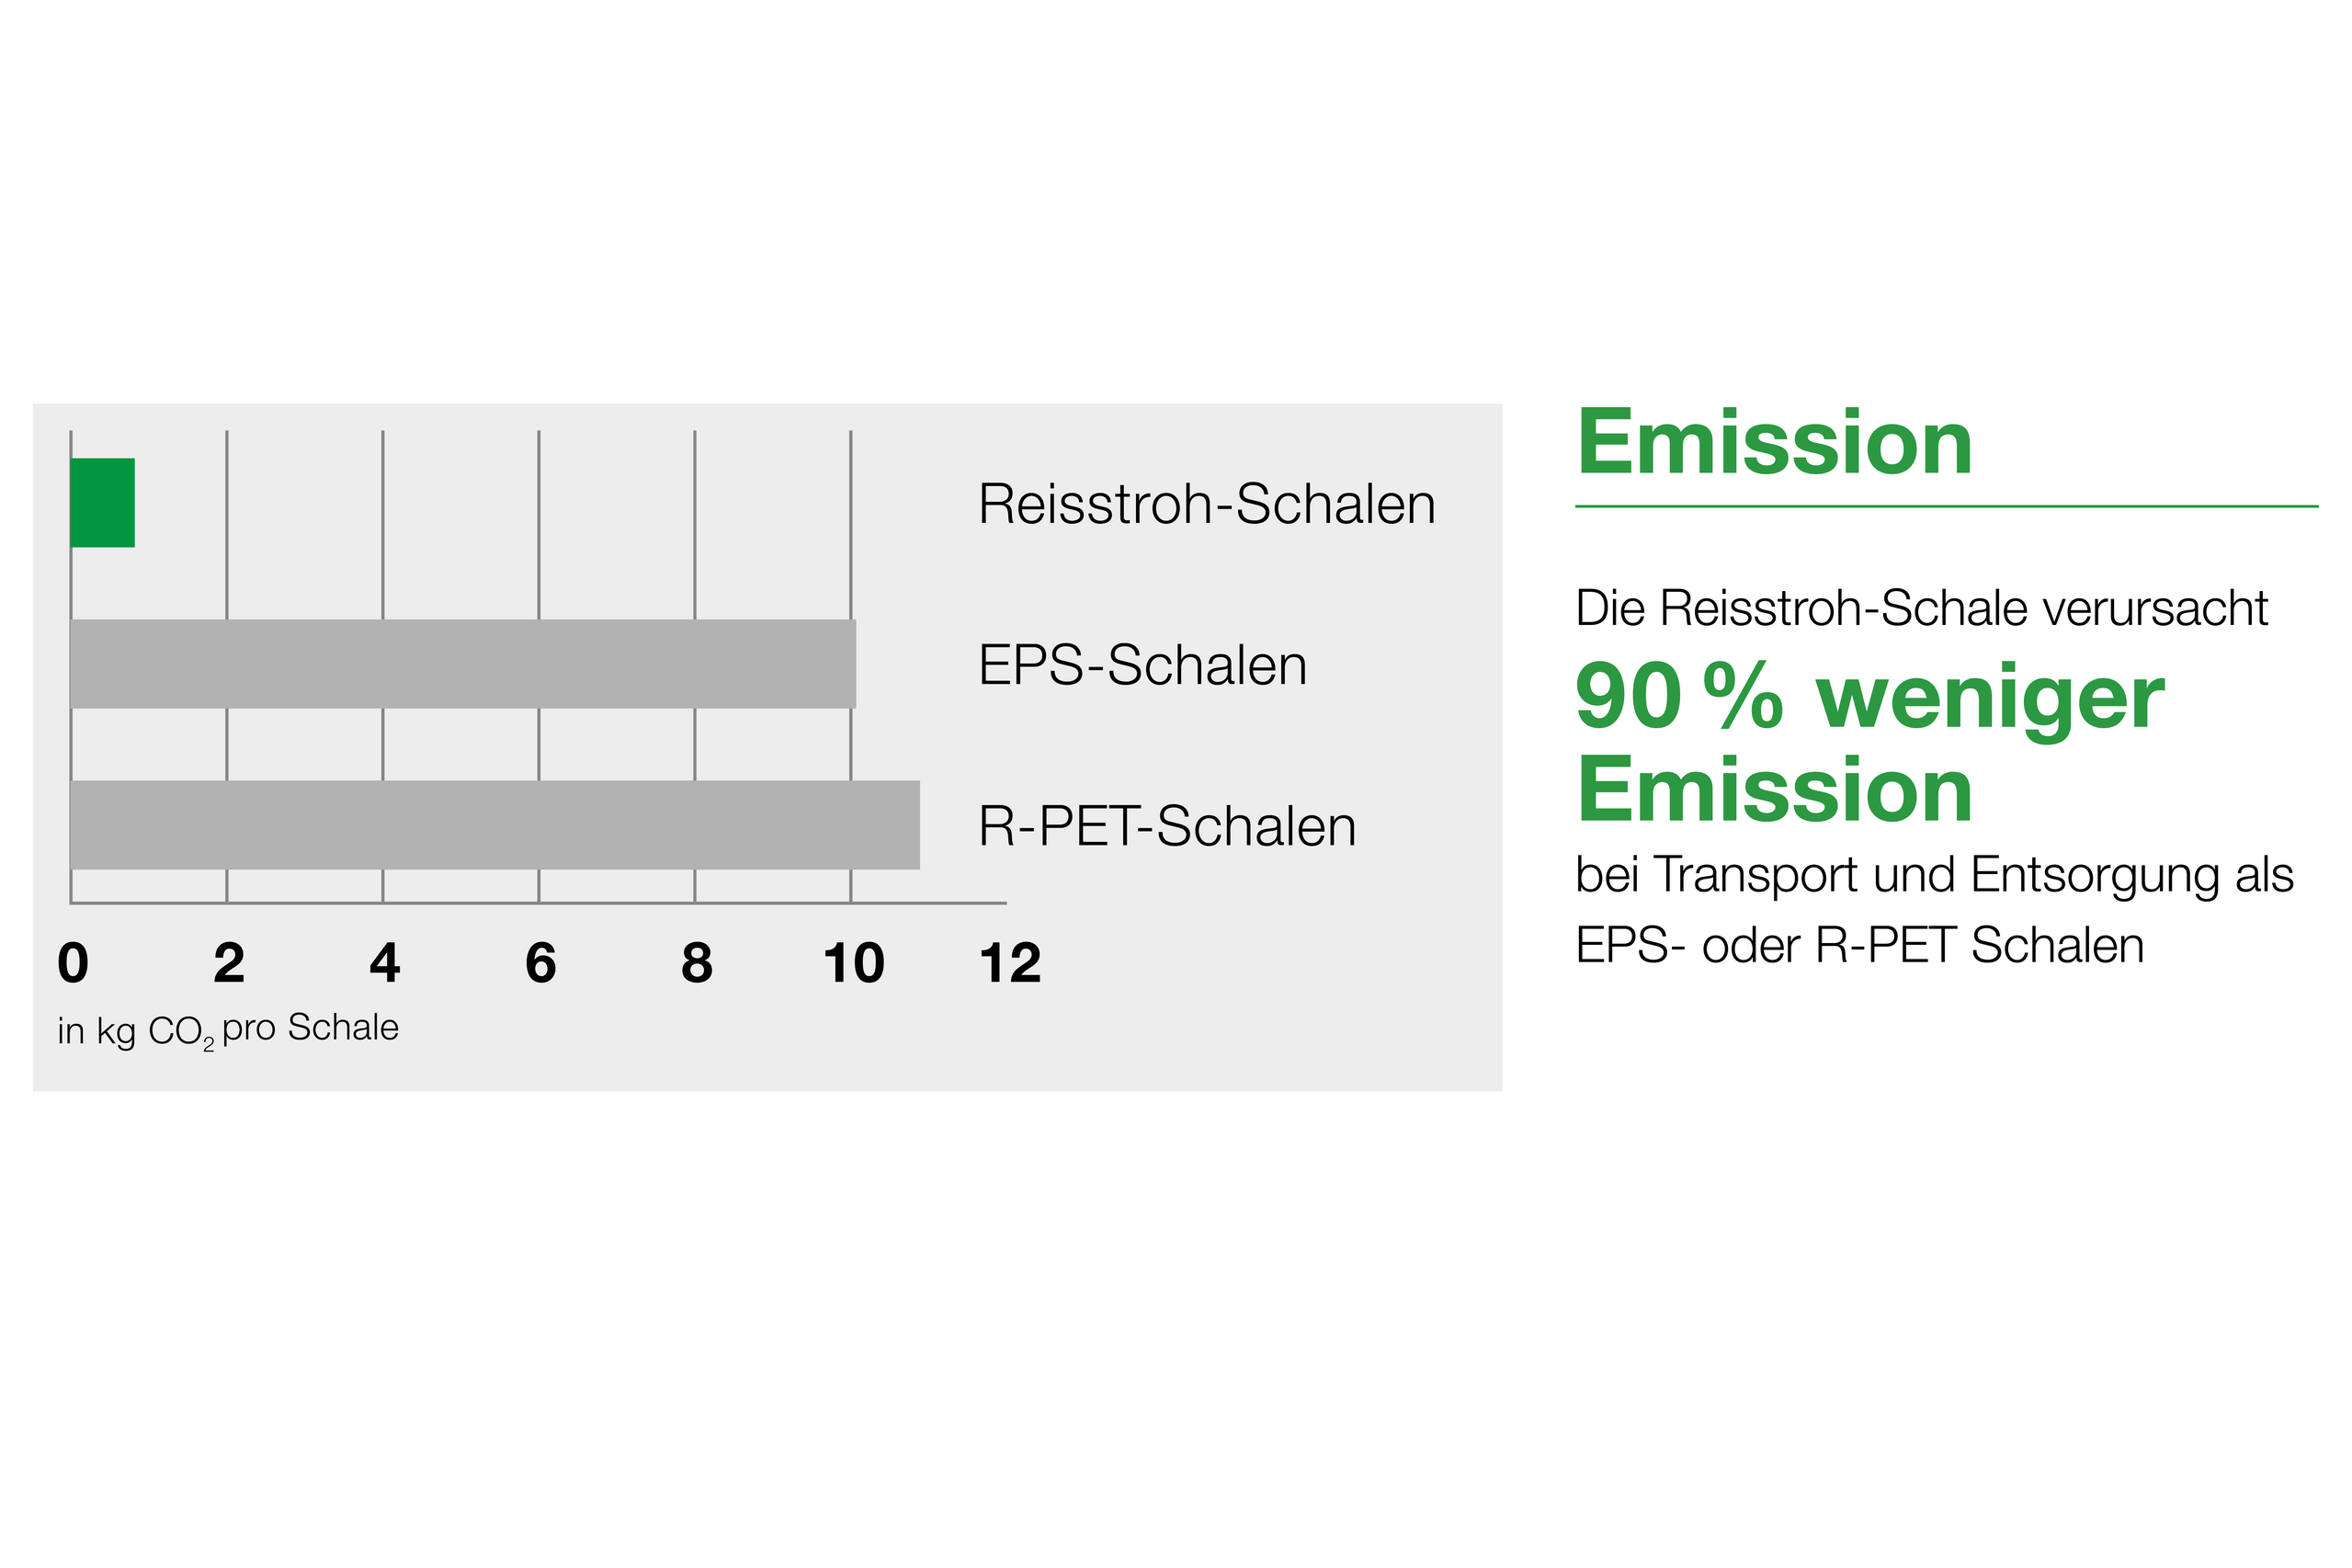 Diagramm zeigt die geringen Emissionen bei Transport und Entsorgung von Reisstroh-Schalen gegenüber EPS-Schalen und R-PET-Schalen.